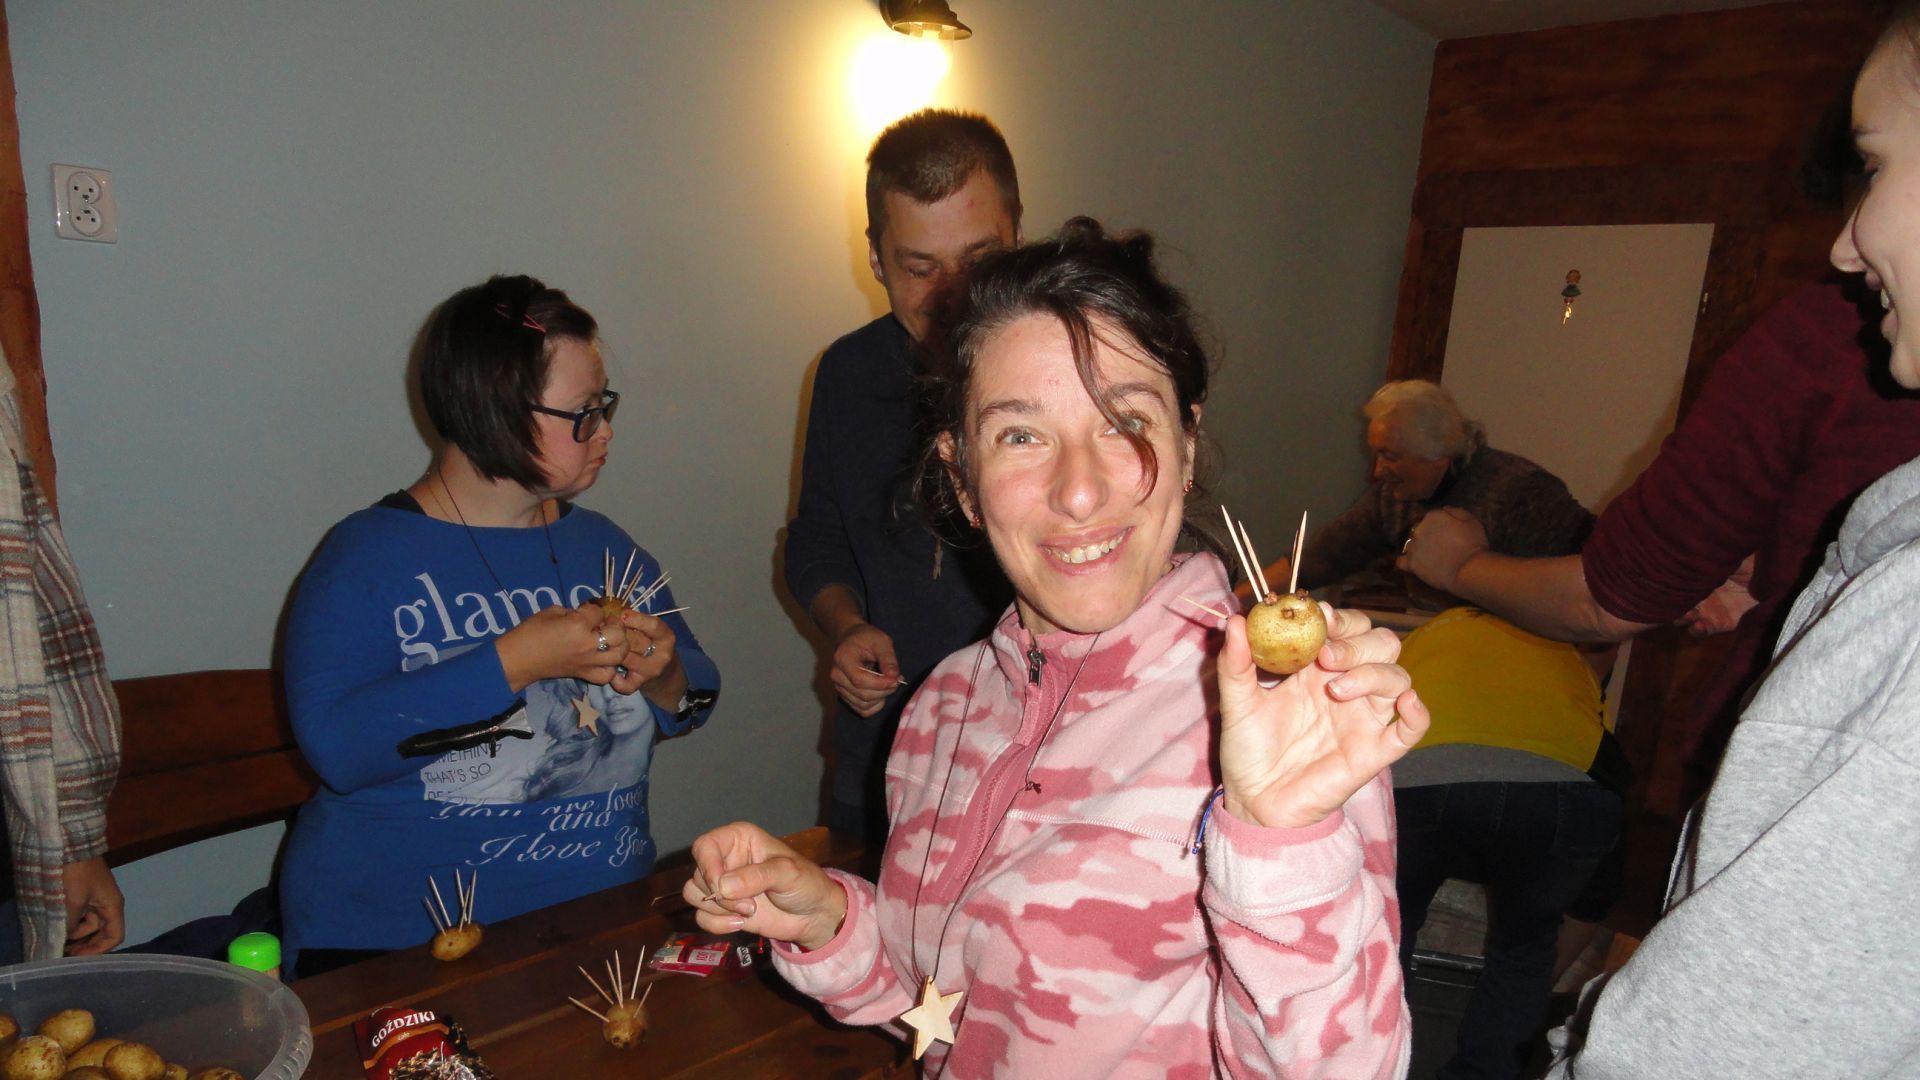 Justyna K. pokazującą jeżyka z ziemniaka, którego zrobiła podczas warsztatów plastycznych.